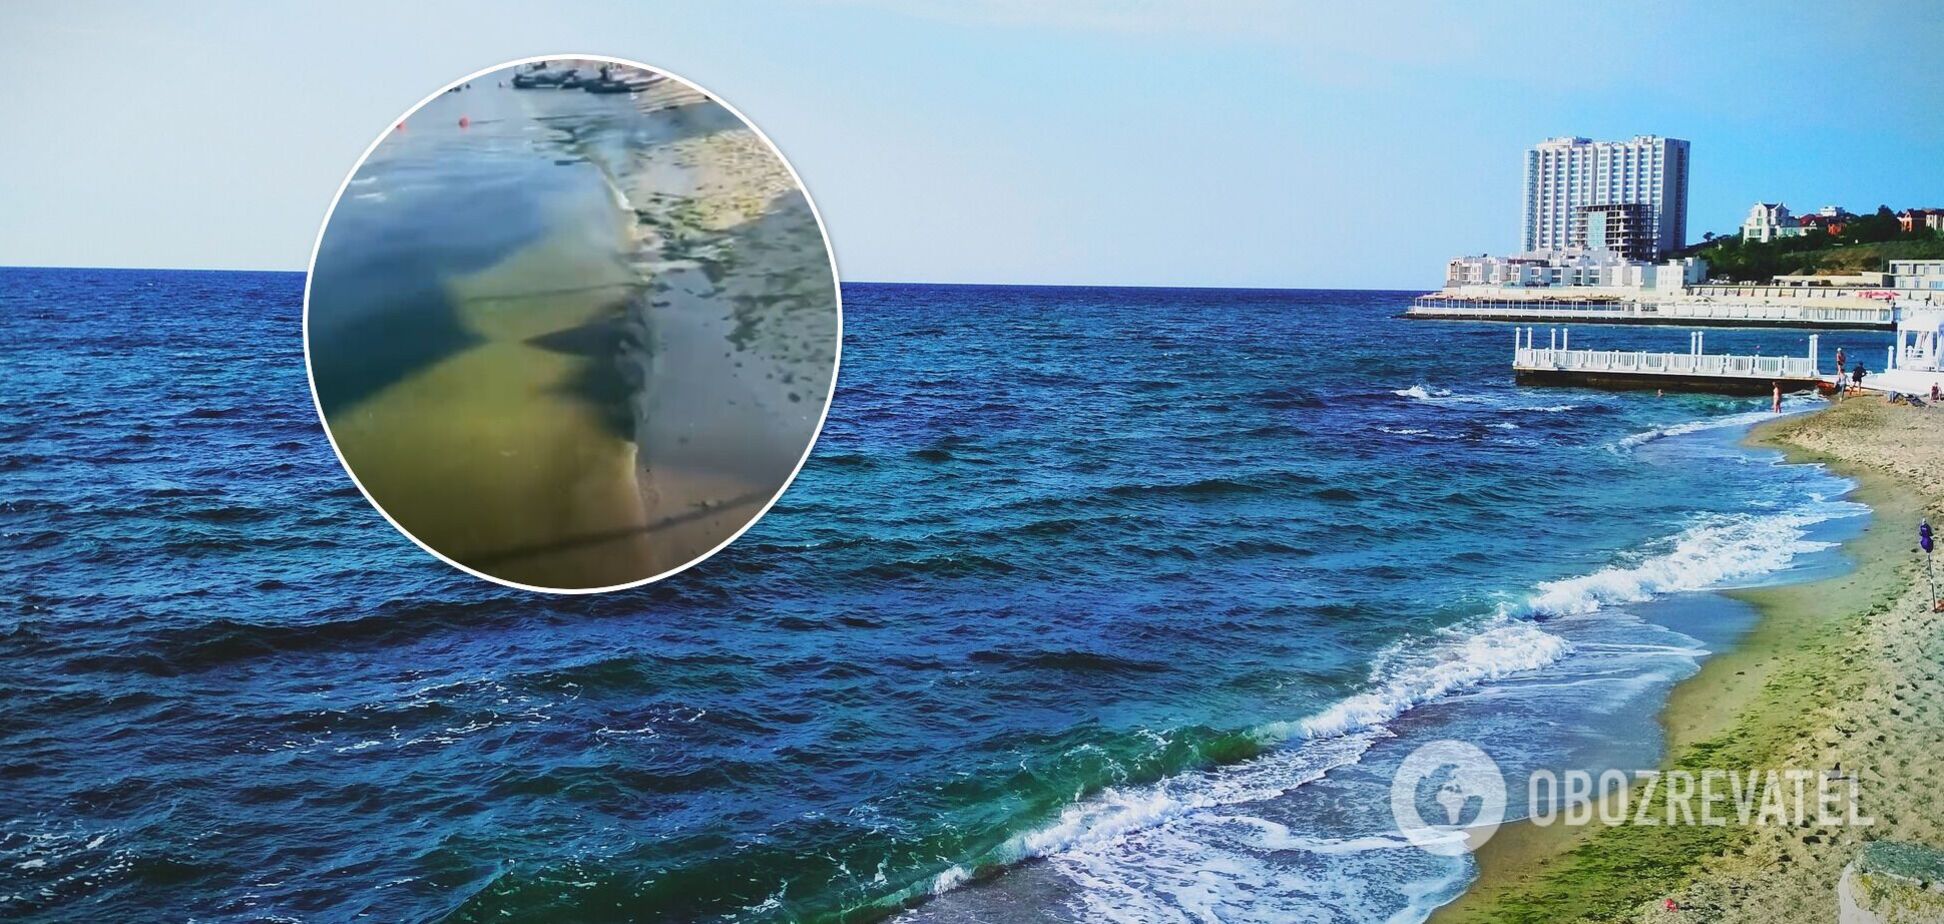 Никто не купается, стоит страшная вонь: турист пожаловался на отдых в Одессе. Видео